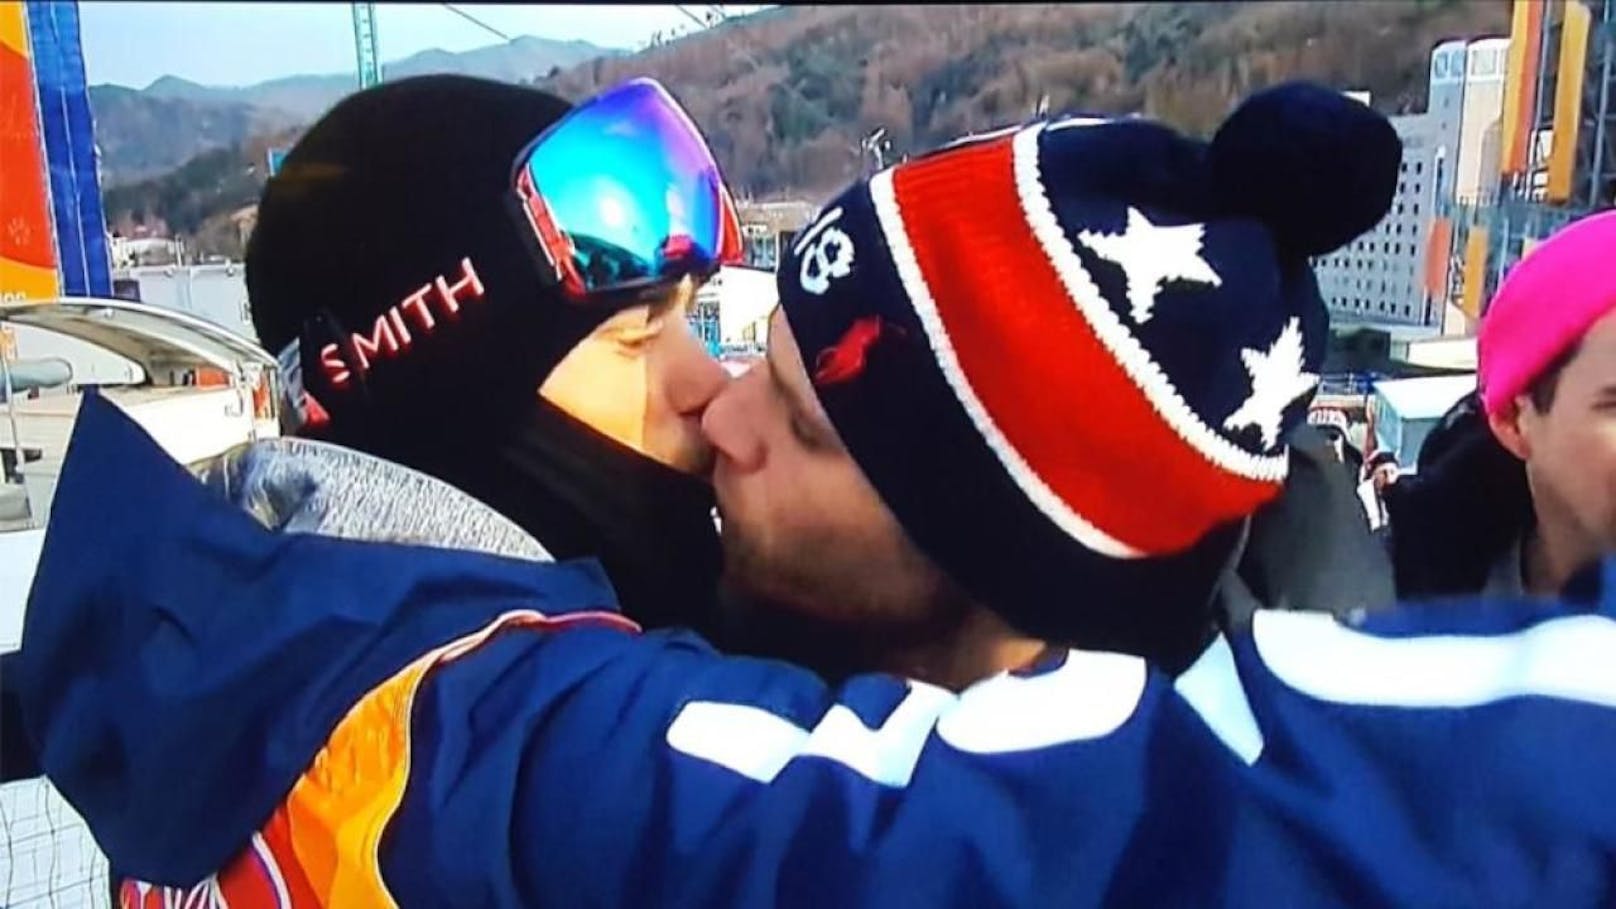 Goldig: Schwuler Ski-Star küsst Freund live im TV